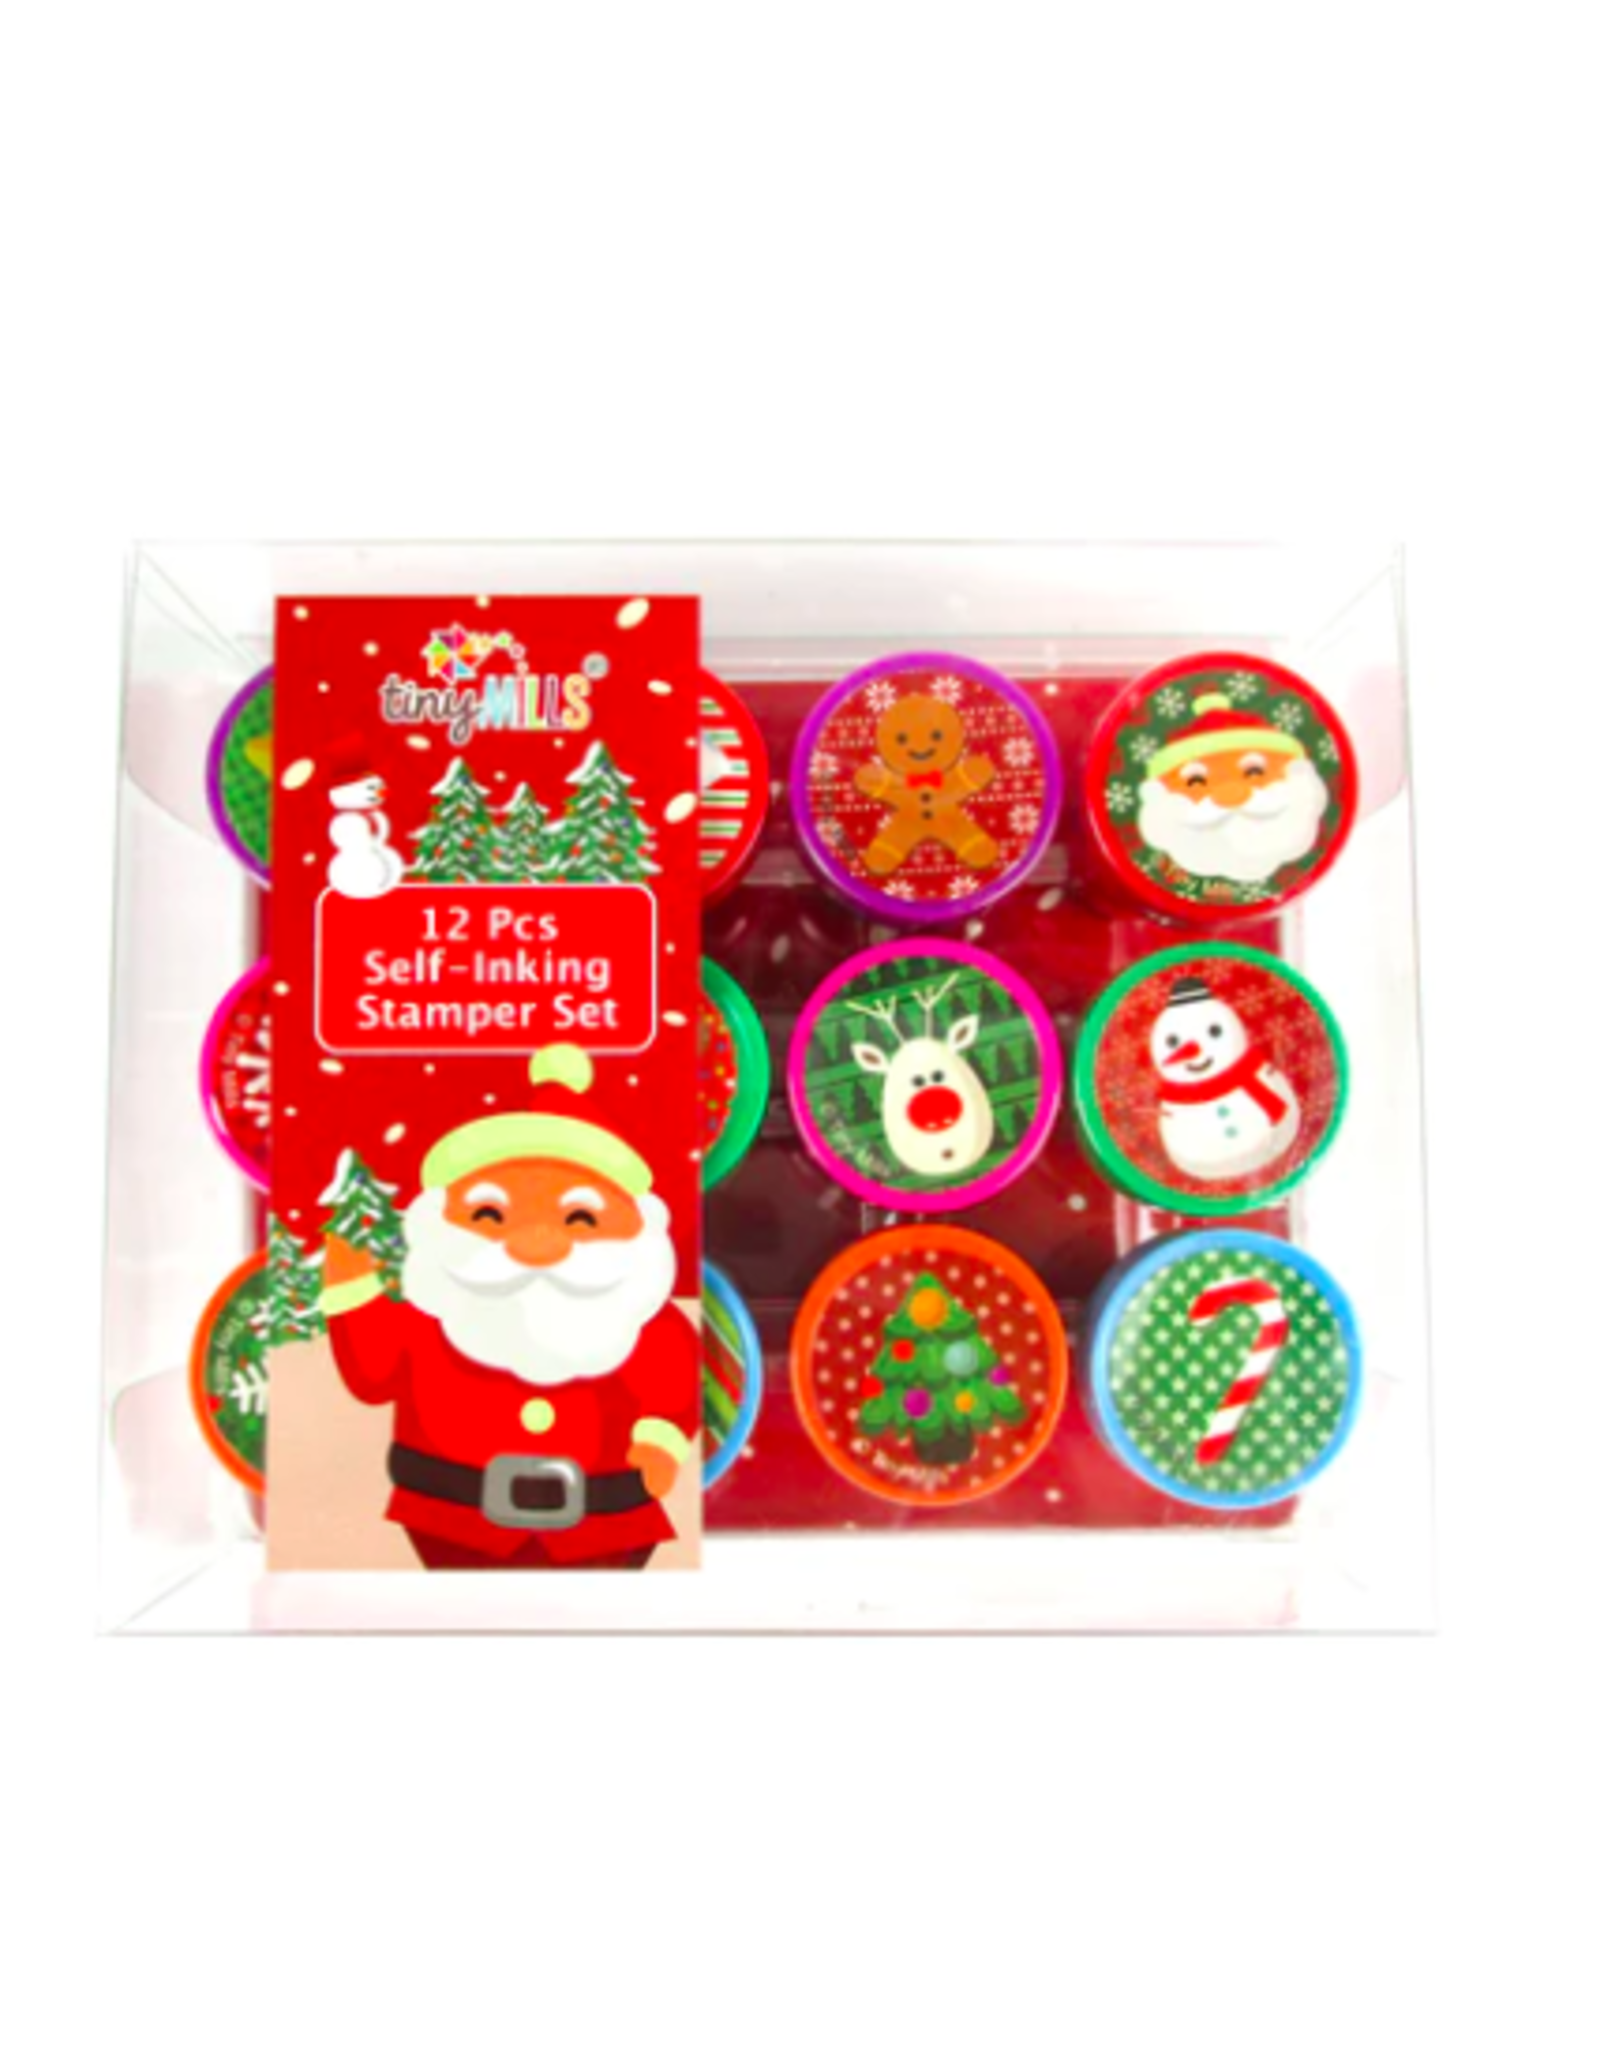 Tiny Mills Christmas Stamp Kit for Kids